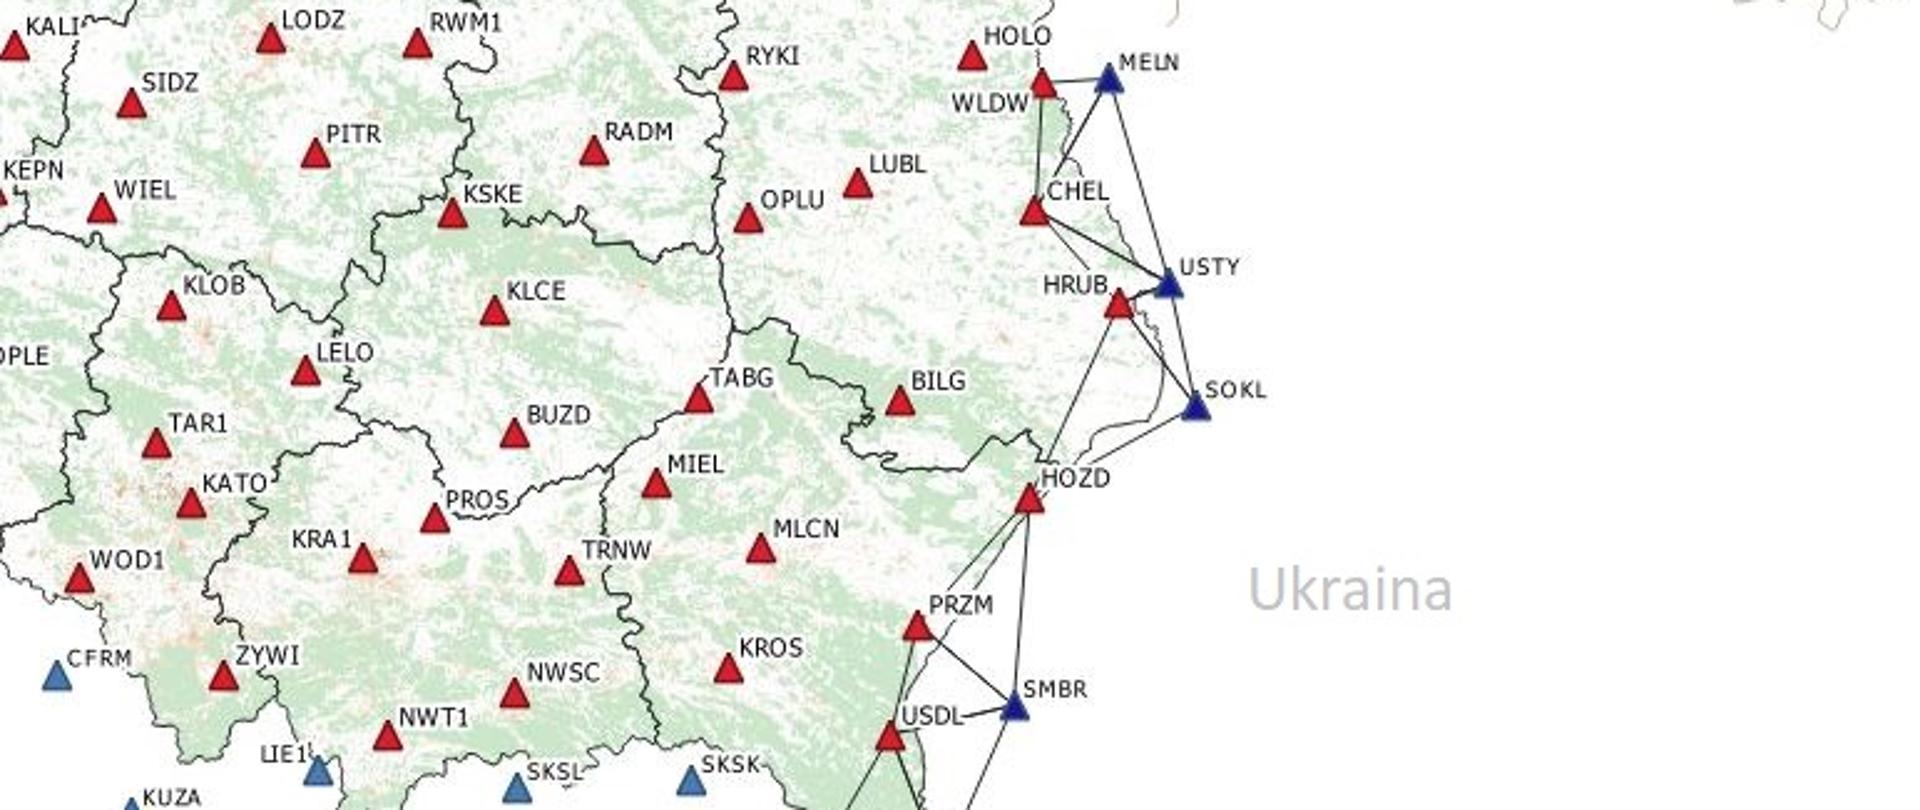 Rysunek przedstawia fragment mapy z lokalizacją ukraińskich stacji referencyjnych GNSS objętych porozumieniem. 